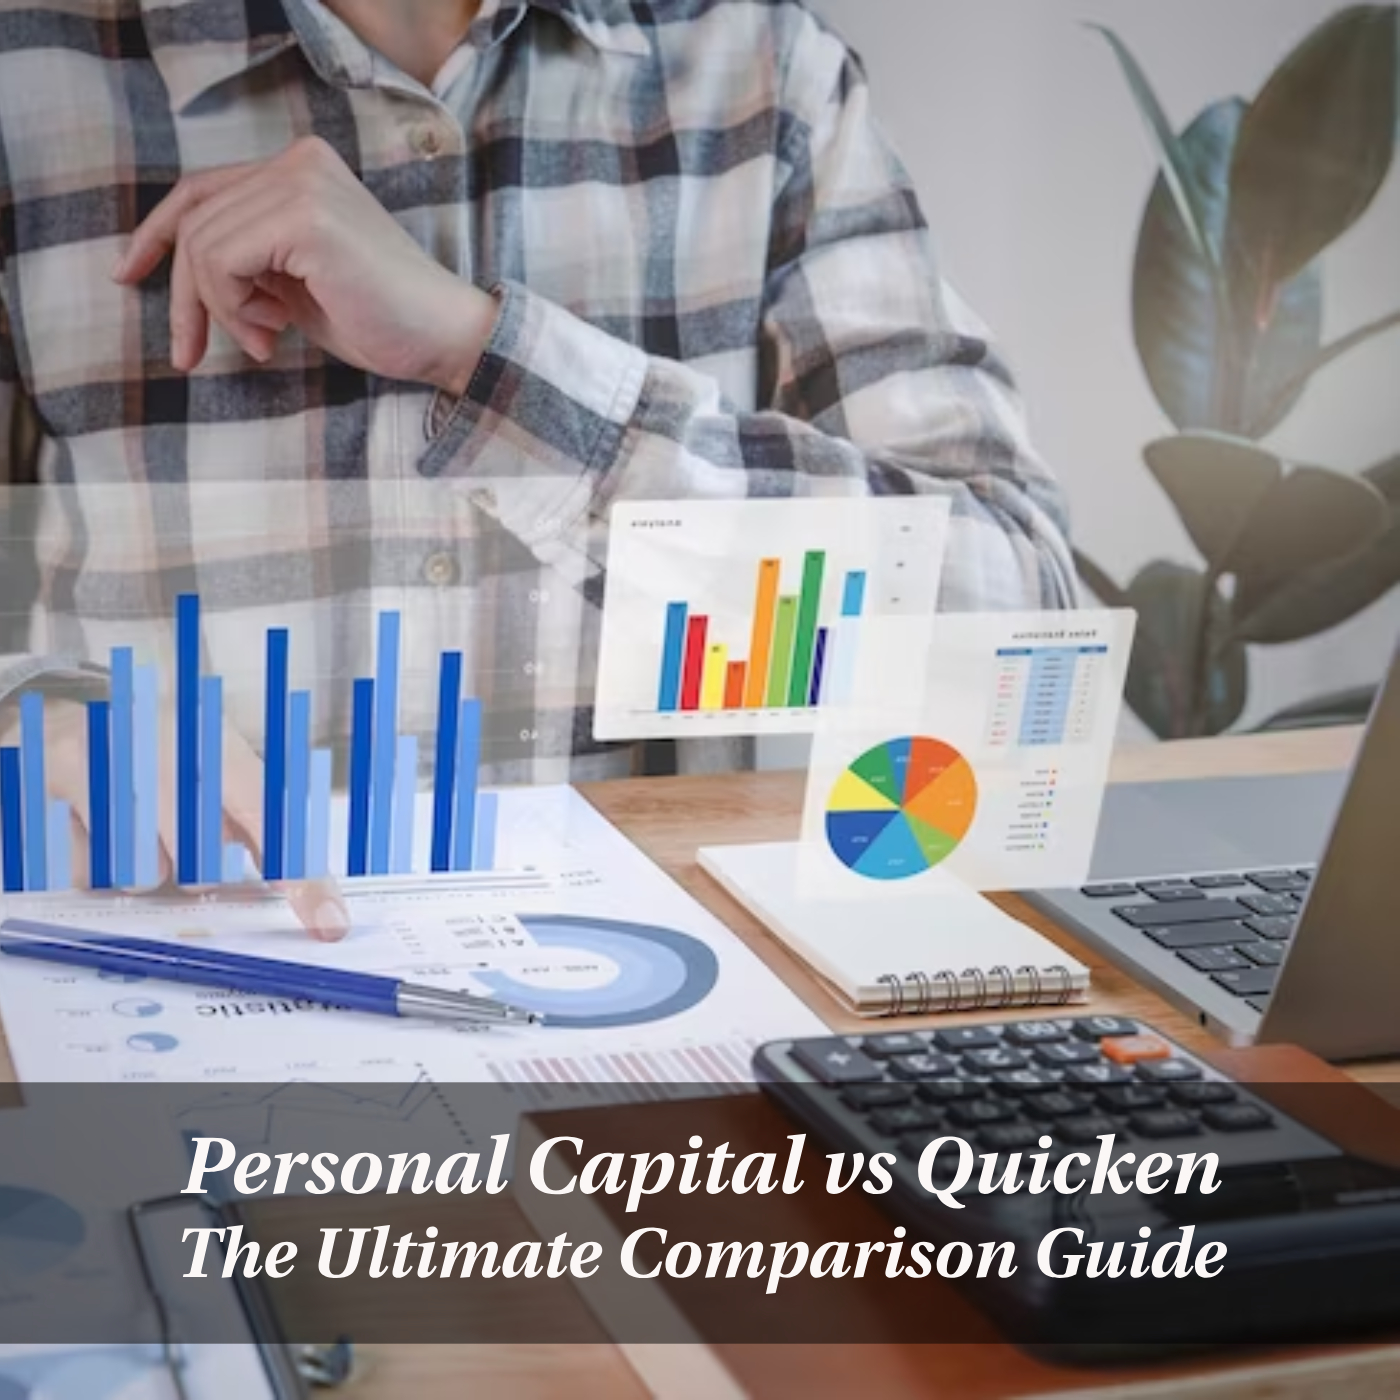 Personal Capital vs Quicken: The Ultimate Comparison Guide